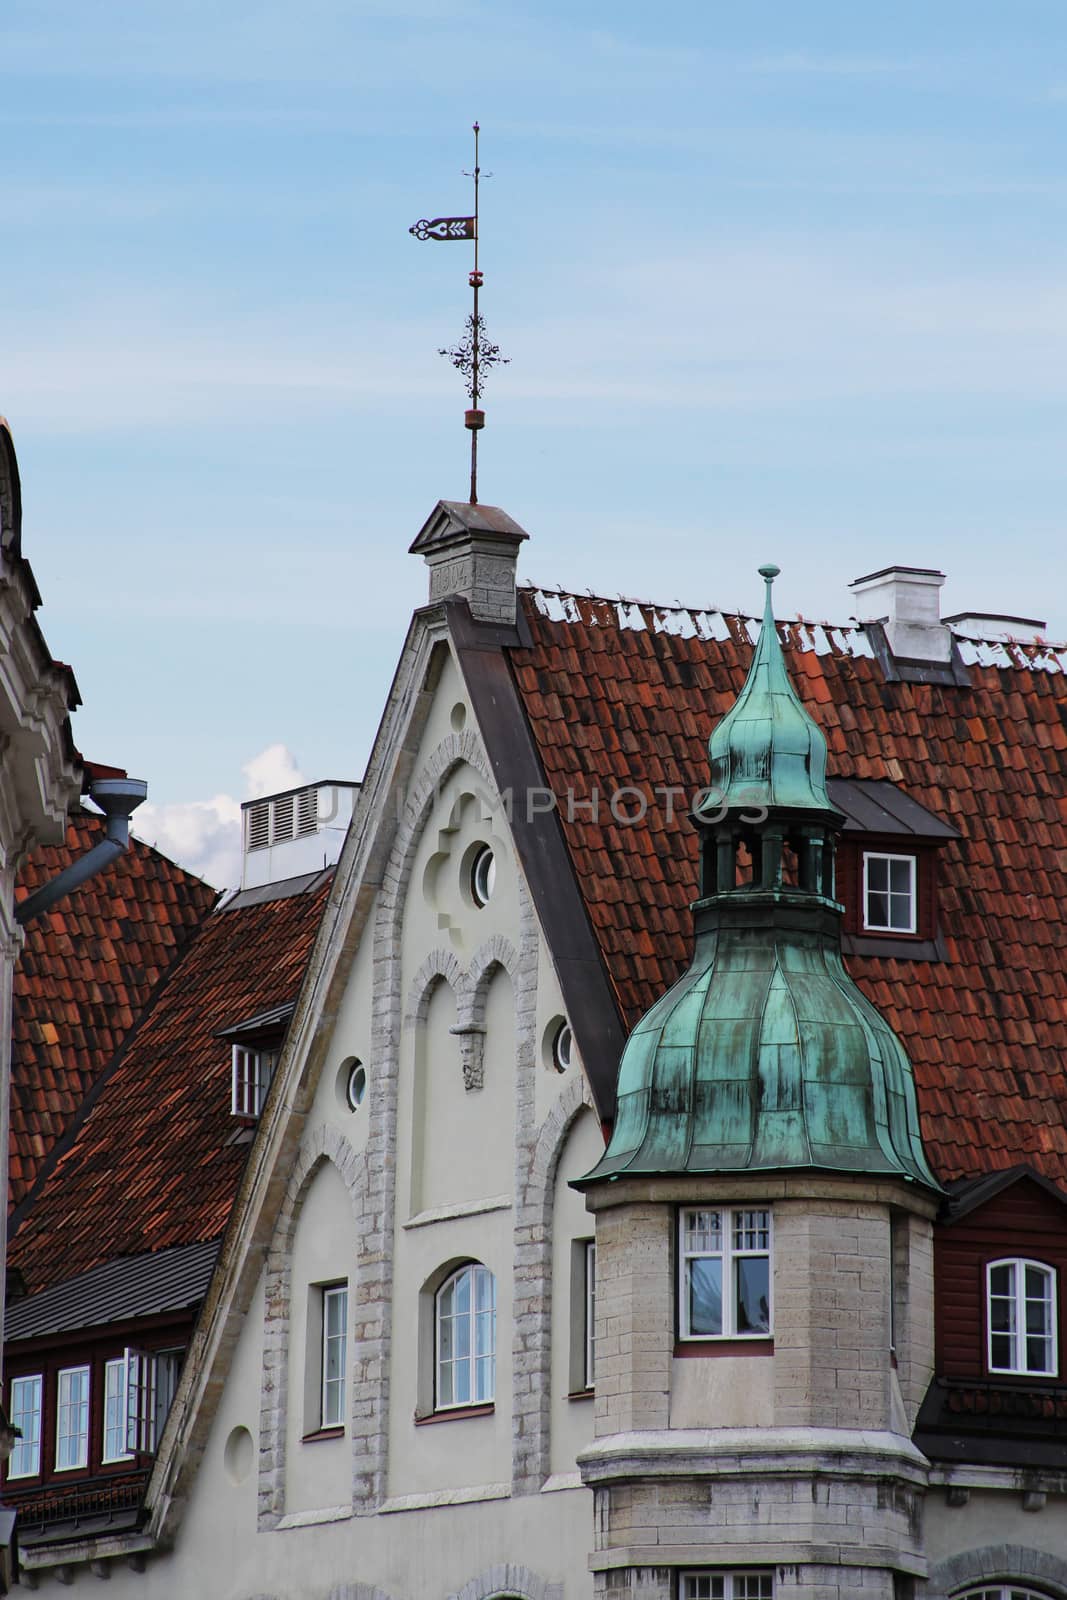 Buildings in old Tallinn by destillat